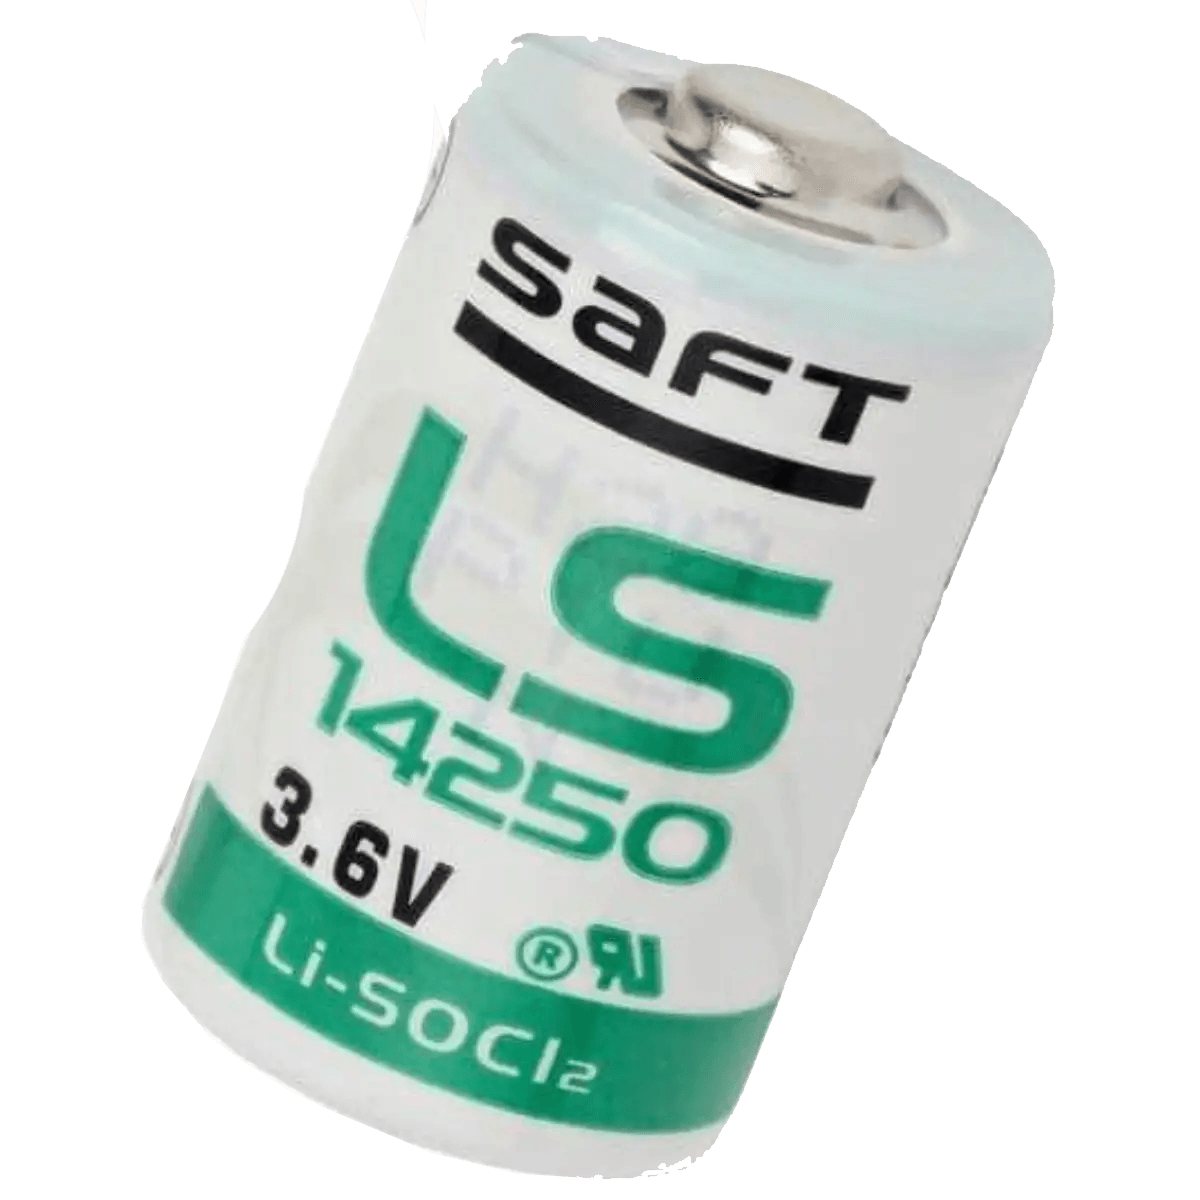 Accessoires Energie - Pile Lithium 1/2AA Saft LS14250 3.6V